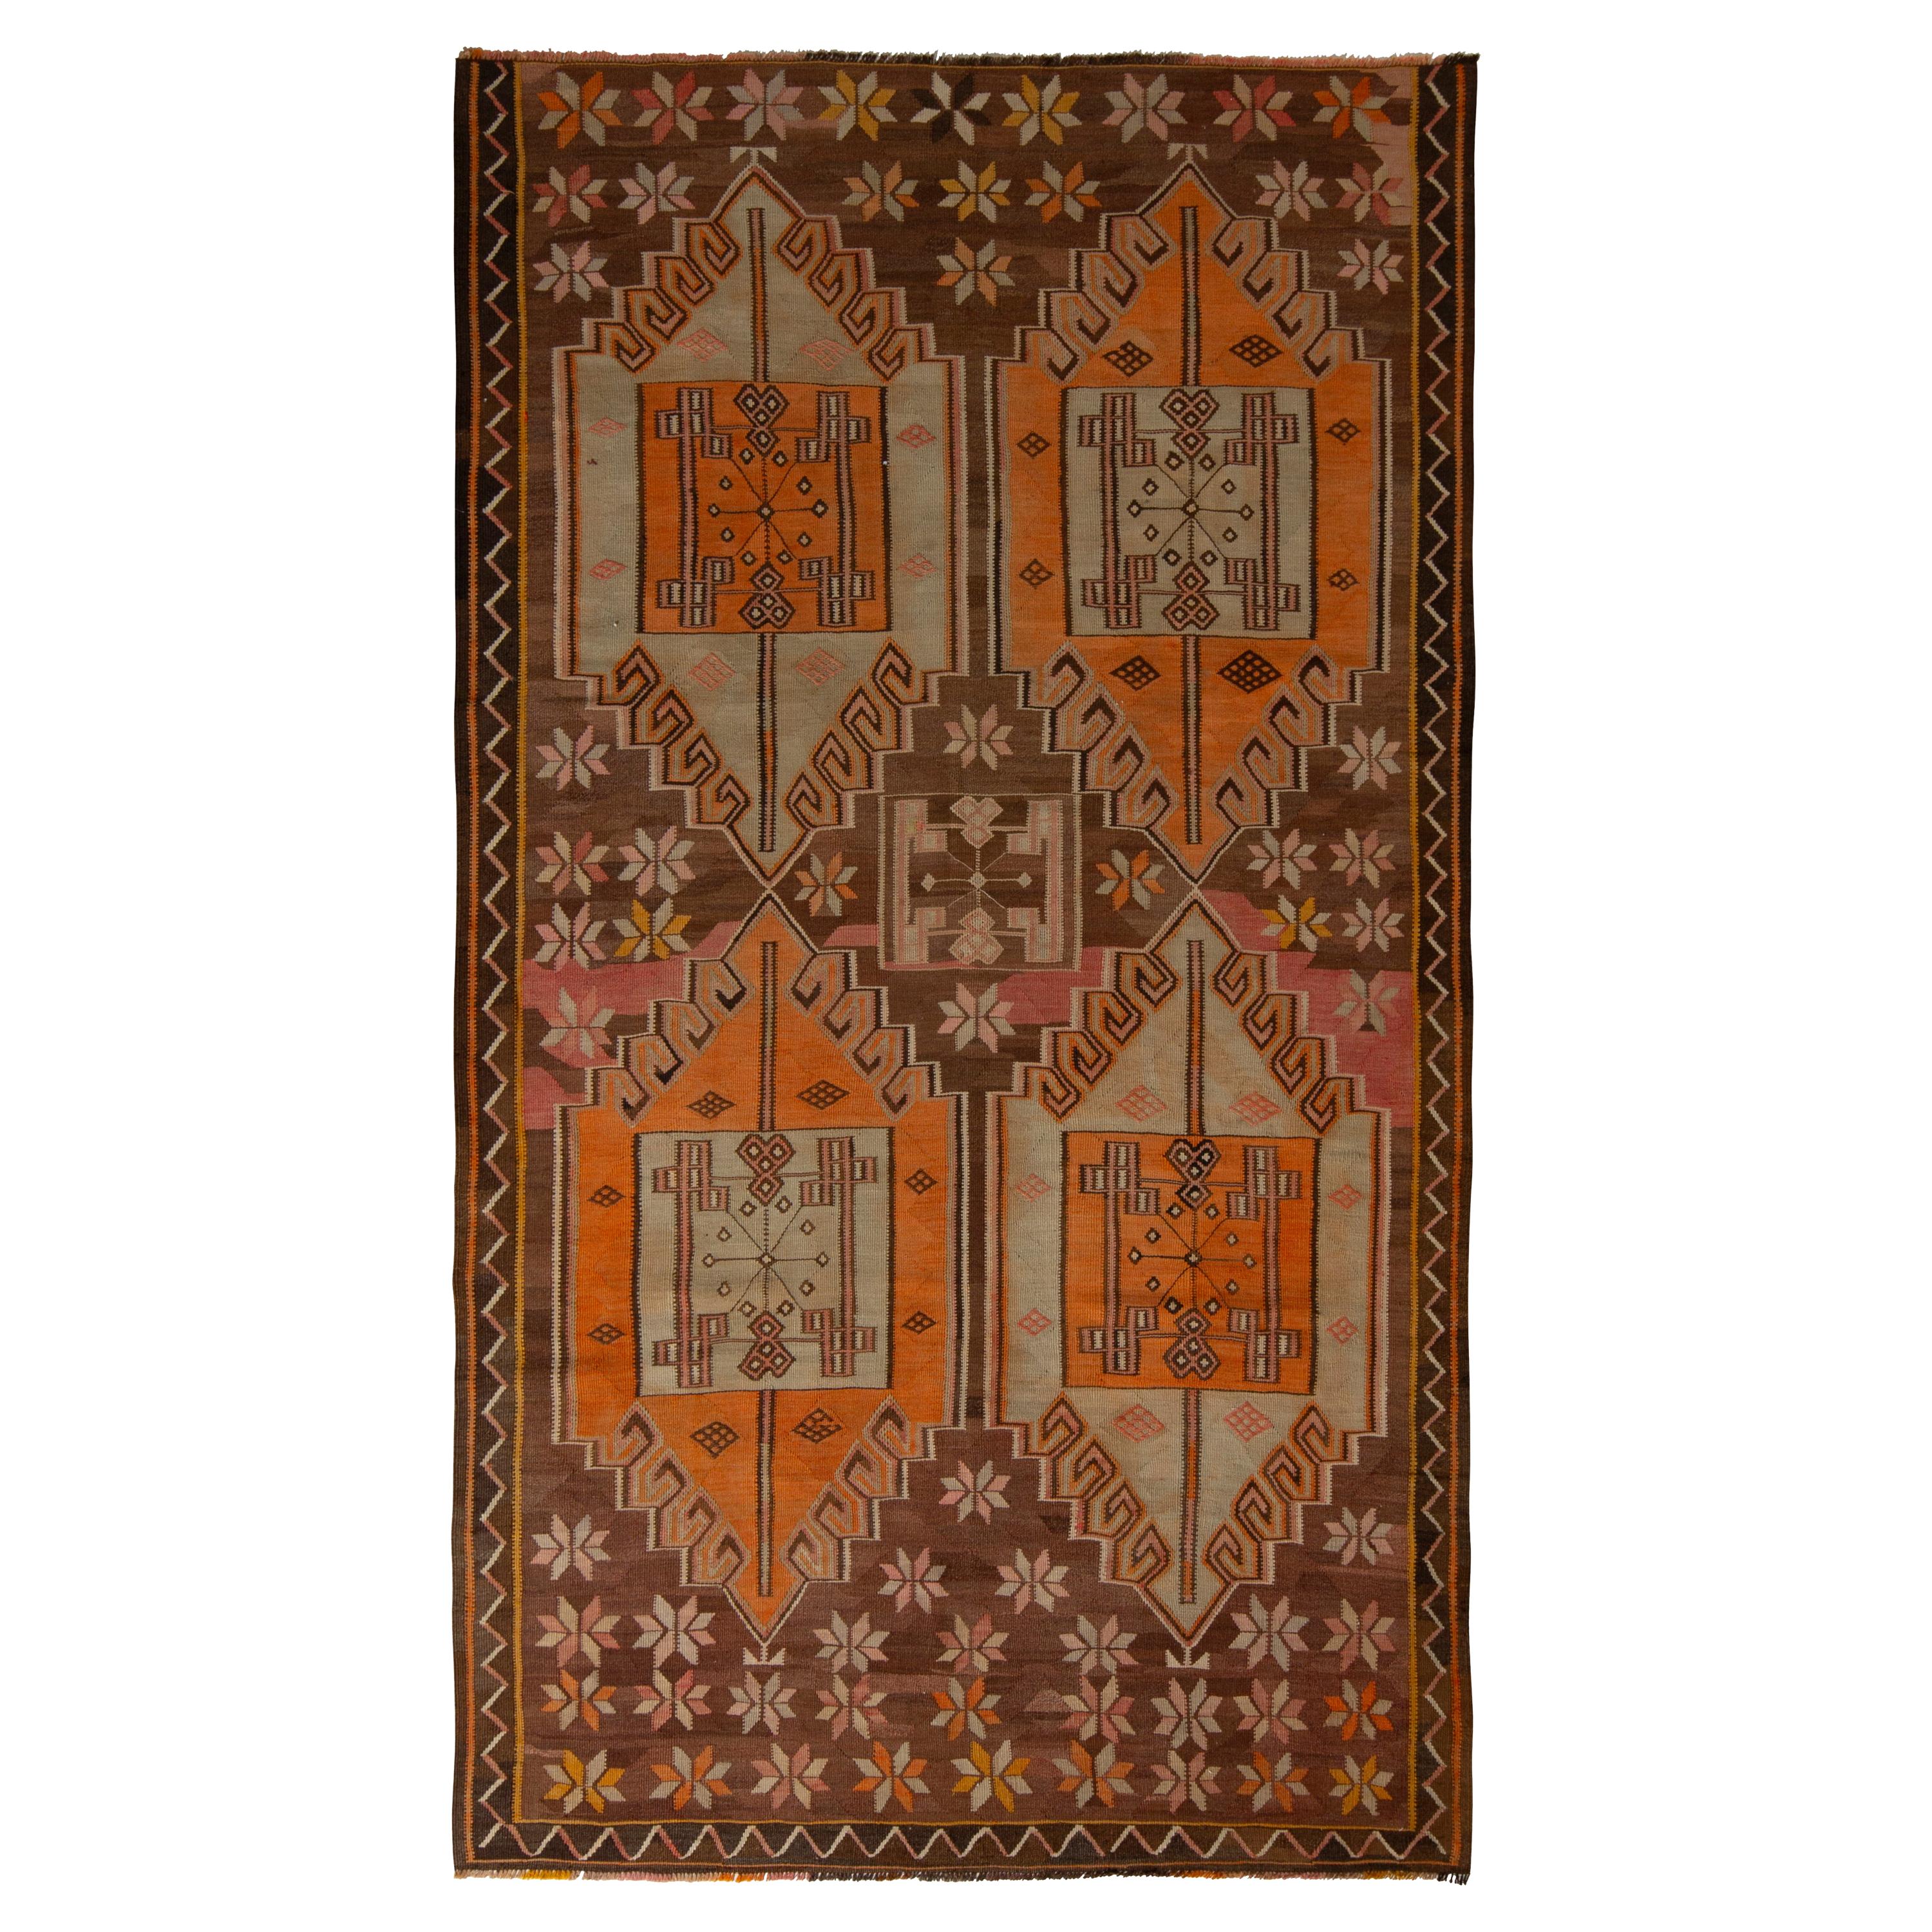 Handwoven Vintage Kars Kilim Rug in Brown Geometric Pattern by Rug & Kilim